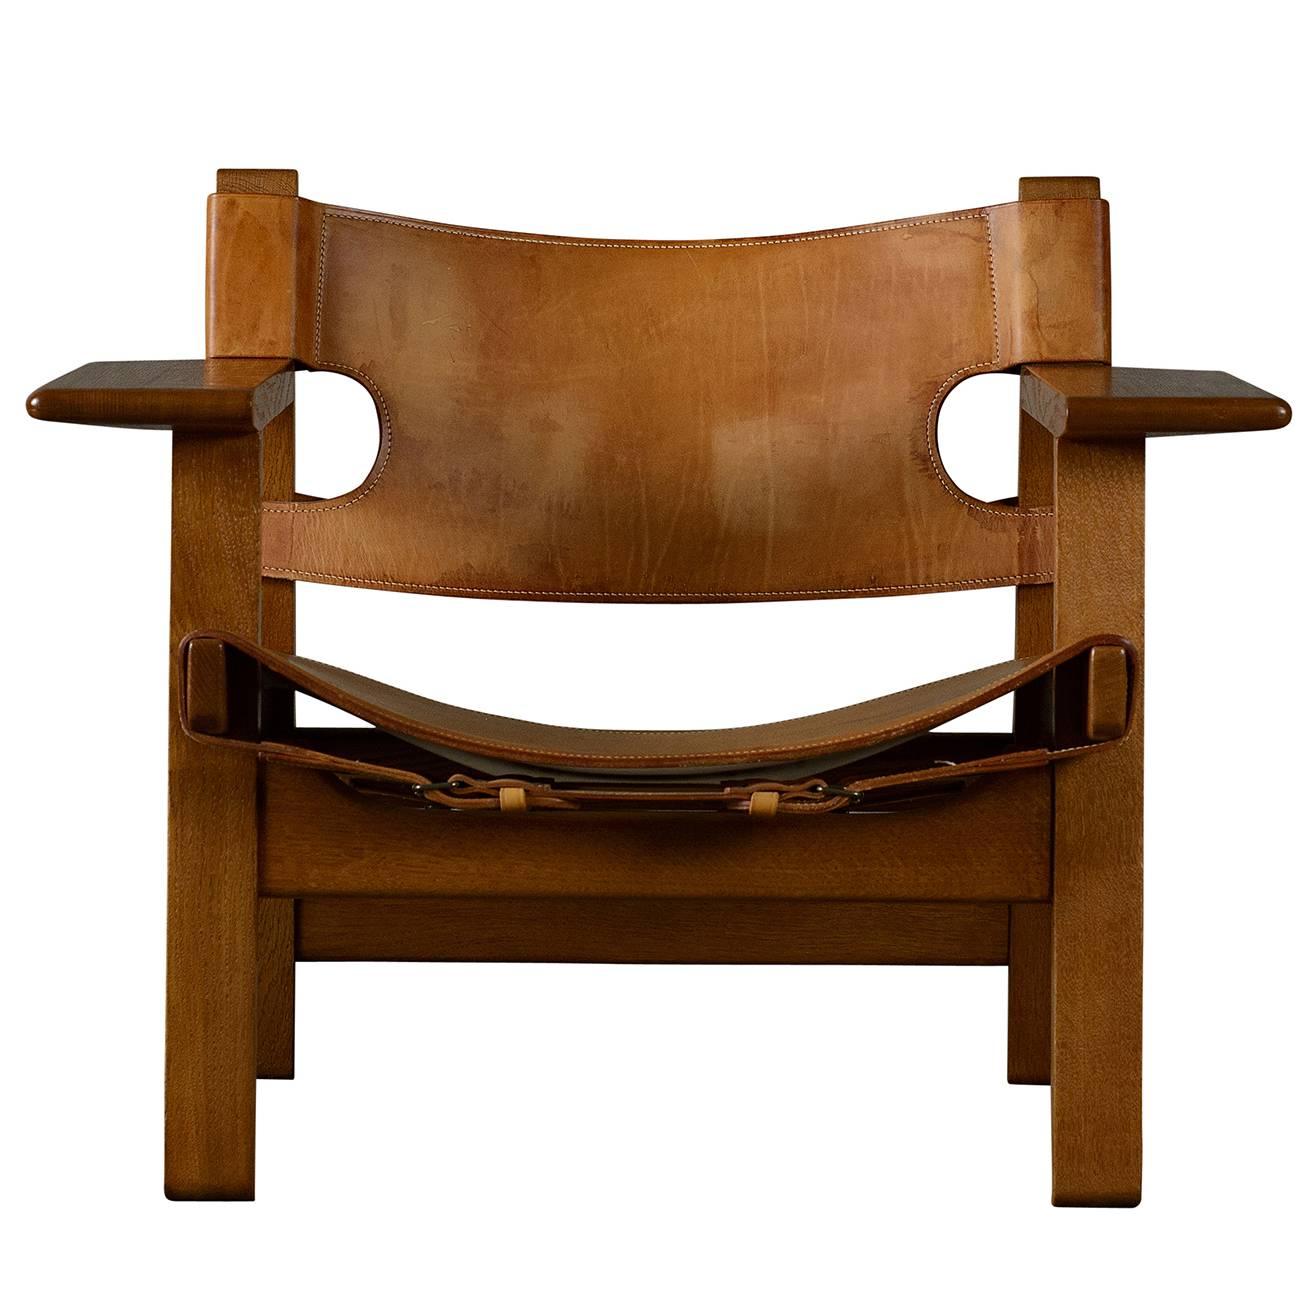 Børge Mogensen "Spanish" Chair